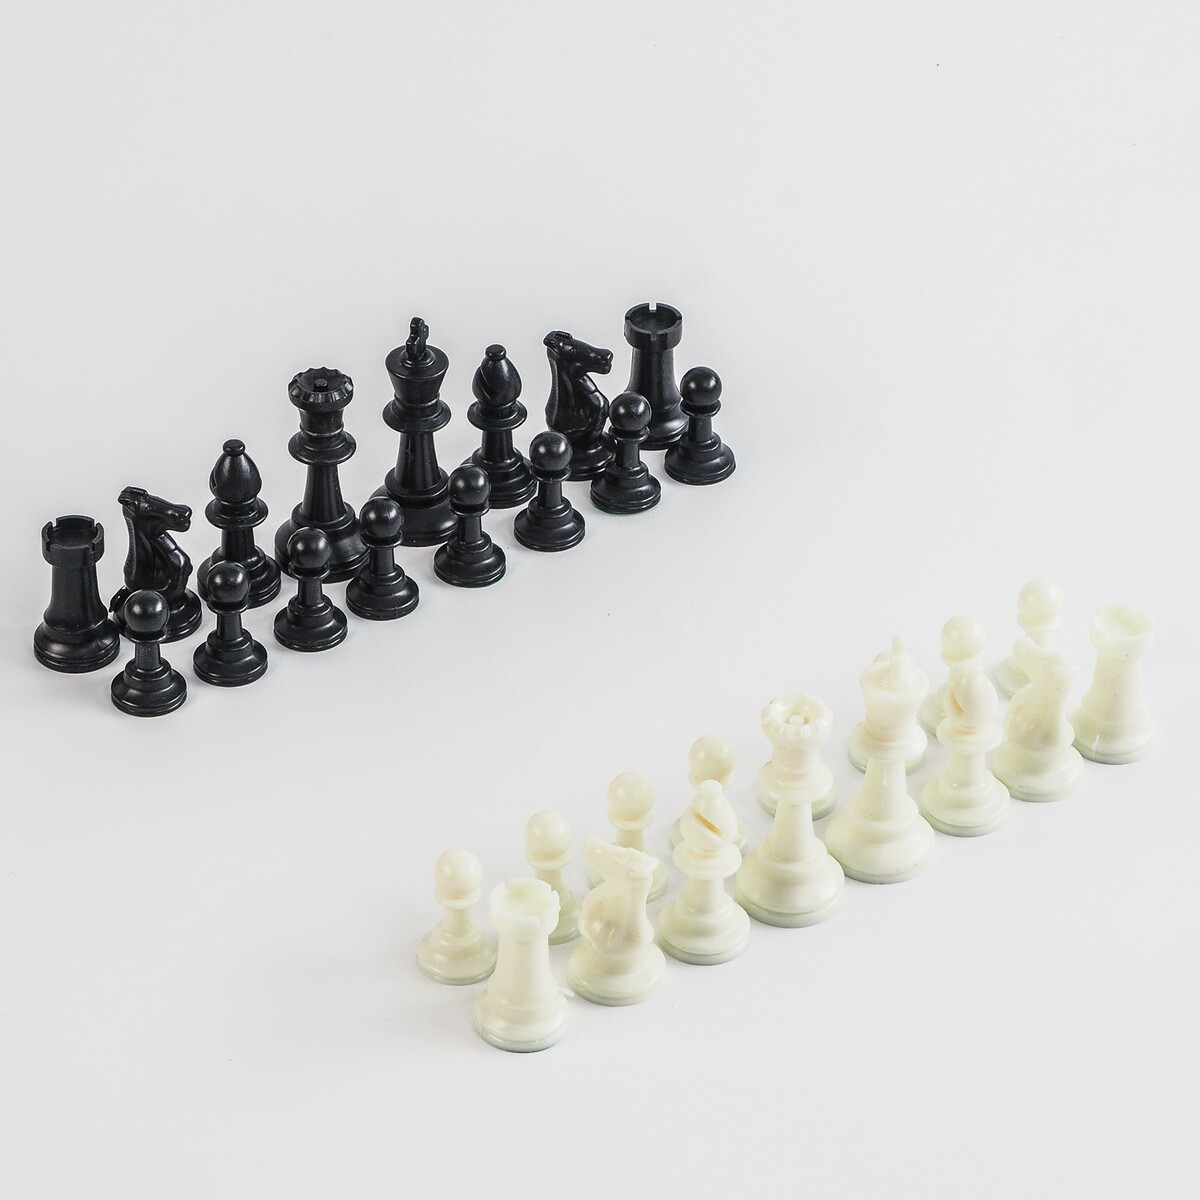 Шахматные фигуры, пластик, король h-7.5 см, пешка h-3.5 см шахматные фигуры обиходные король h 7 см пешка 4 см пластик